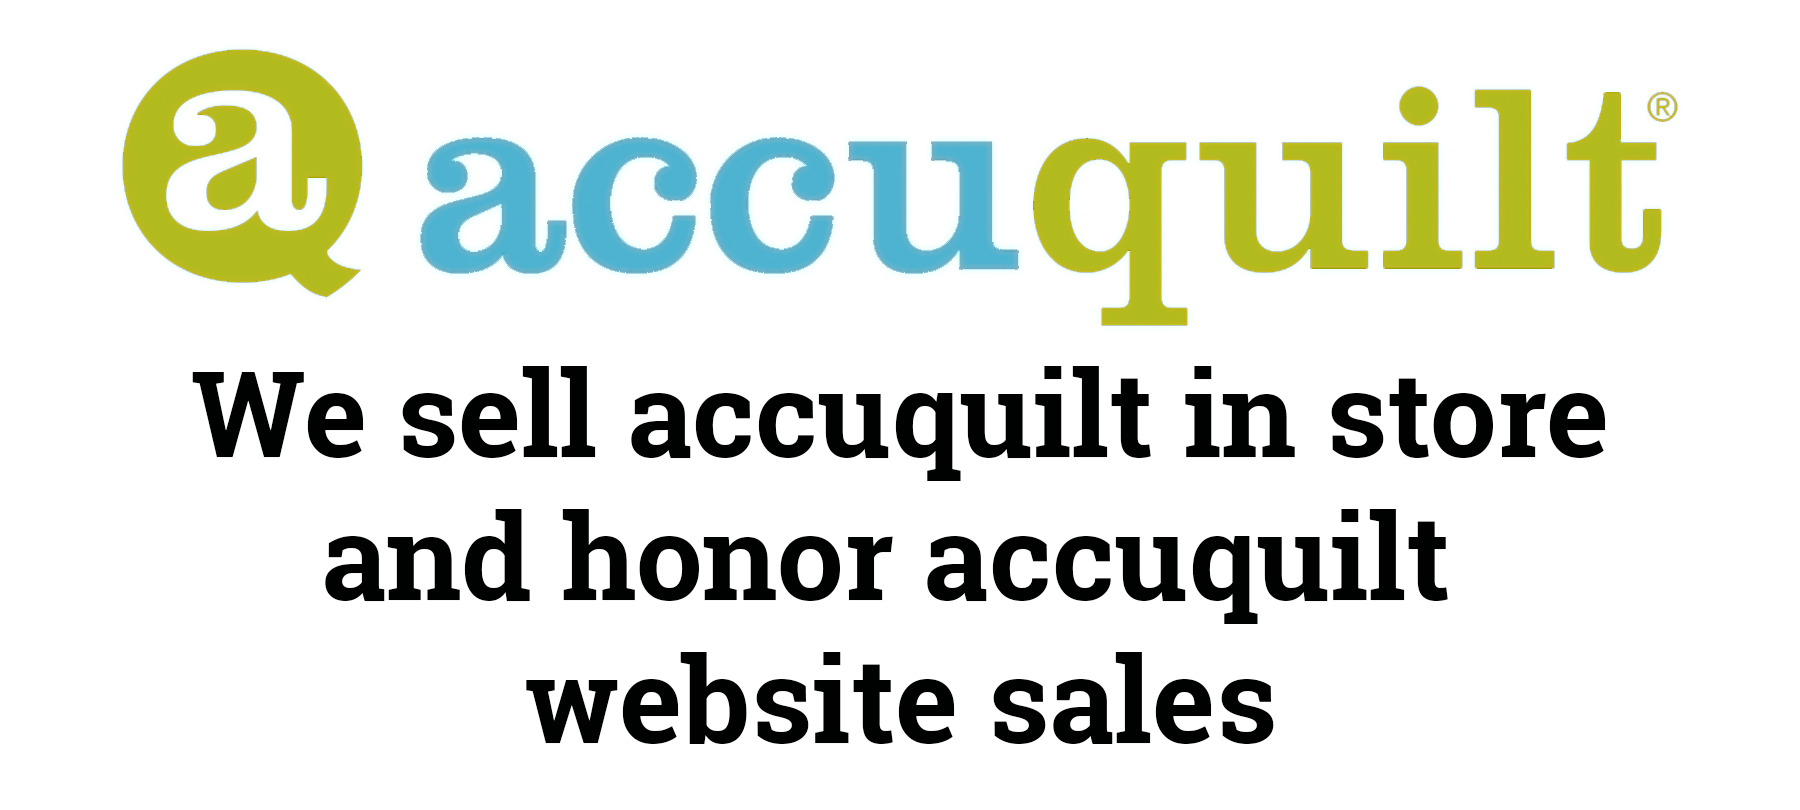 accuquilt-website